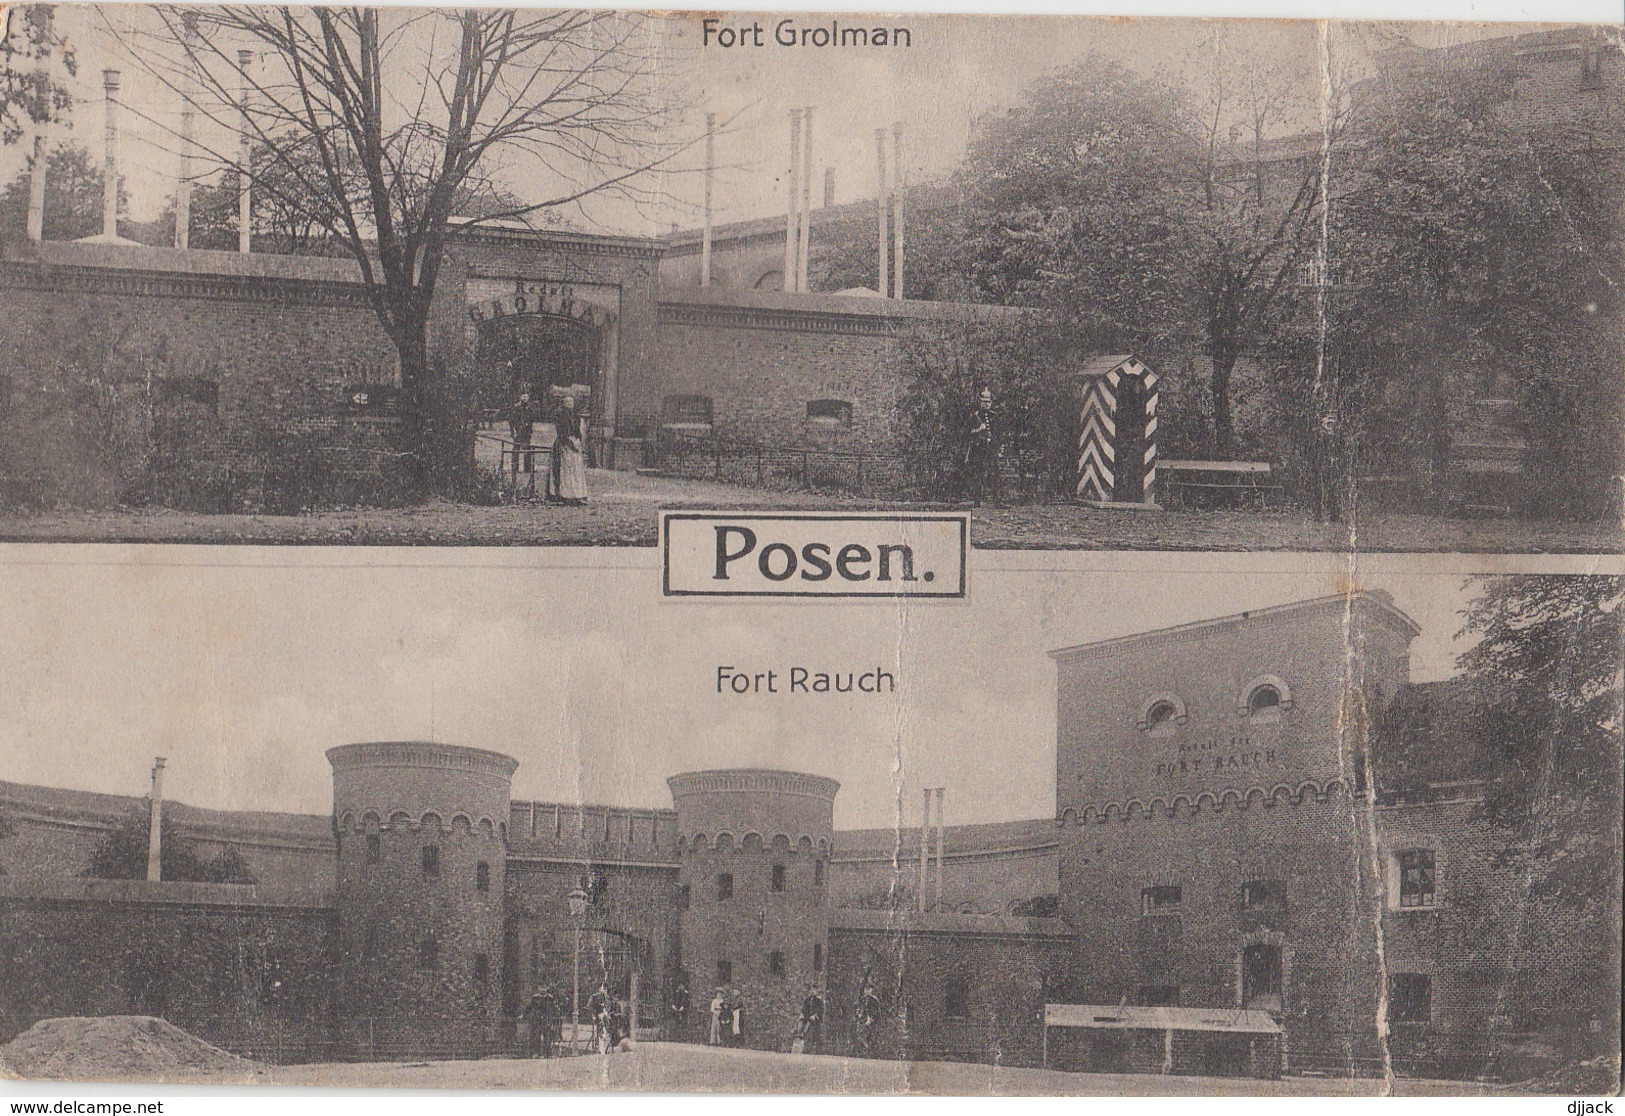 Posen - Fort Groiman, Fort Rauch. Poznan. 1915 - Posen